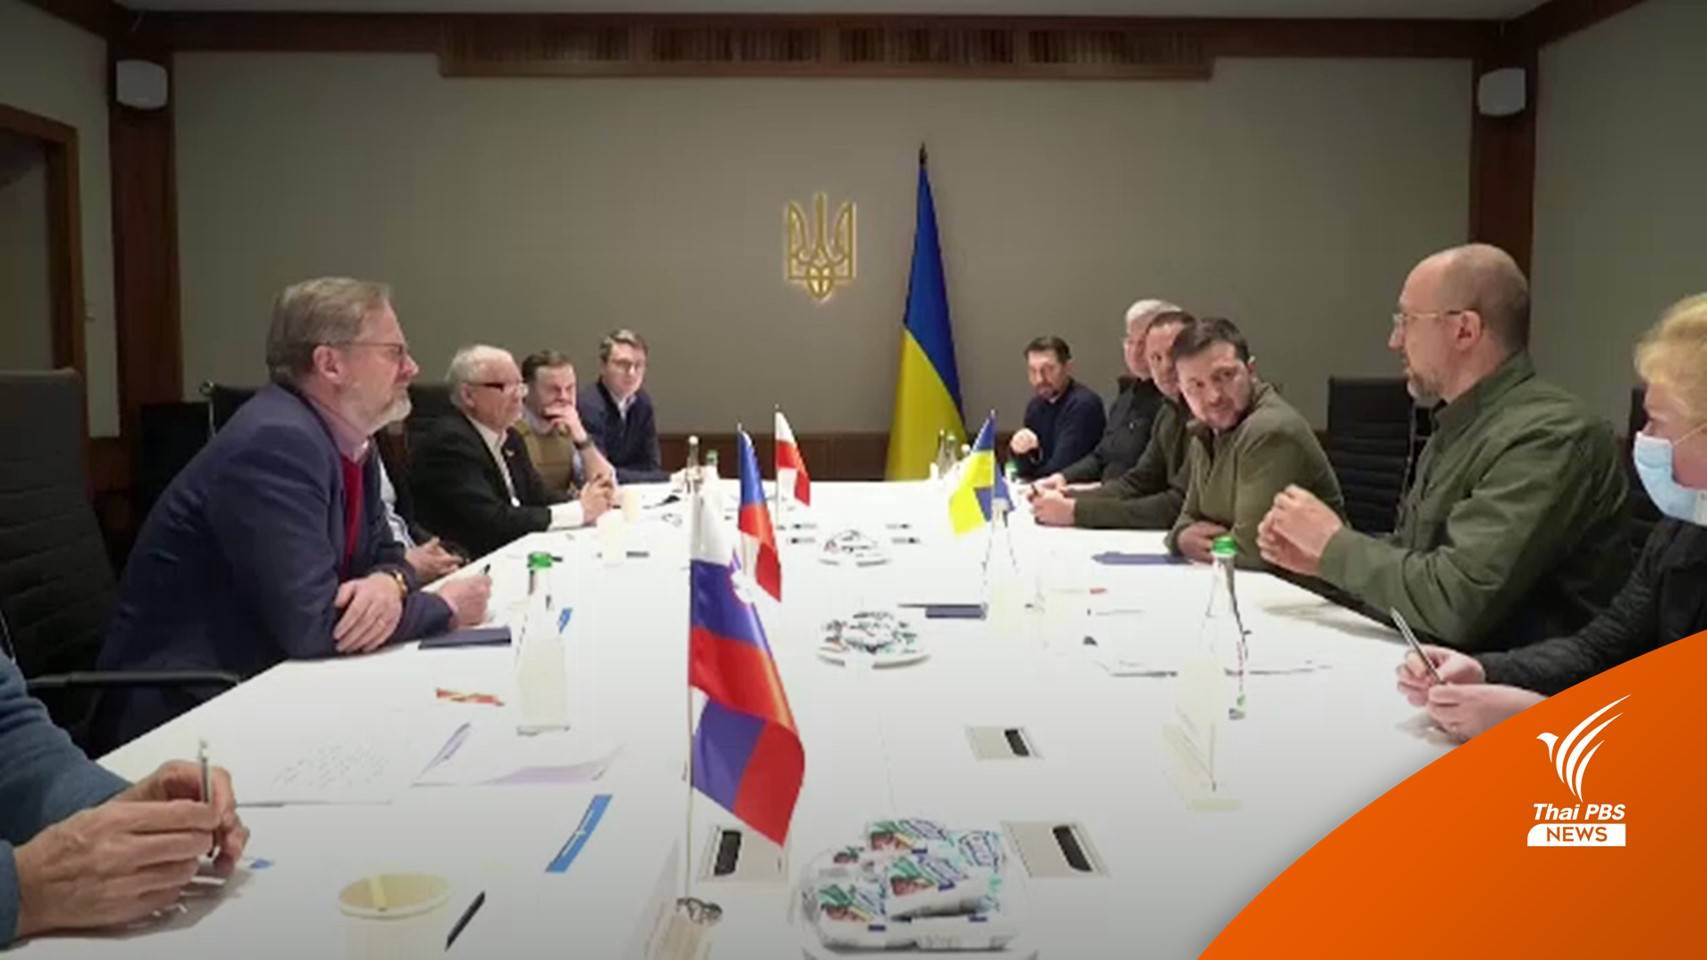 ผู้นำ 3 ชาติยุโรปหนุนยูเครนเยือน "กรุงเคียฟ" ท่ามกลางสงคราม